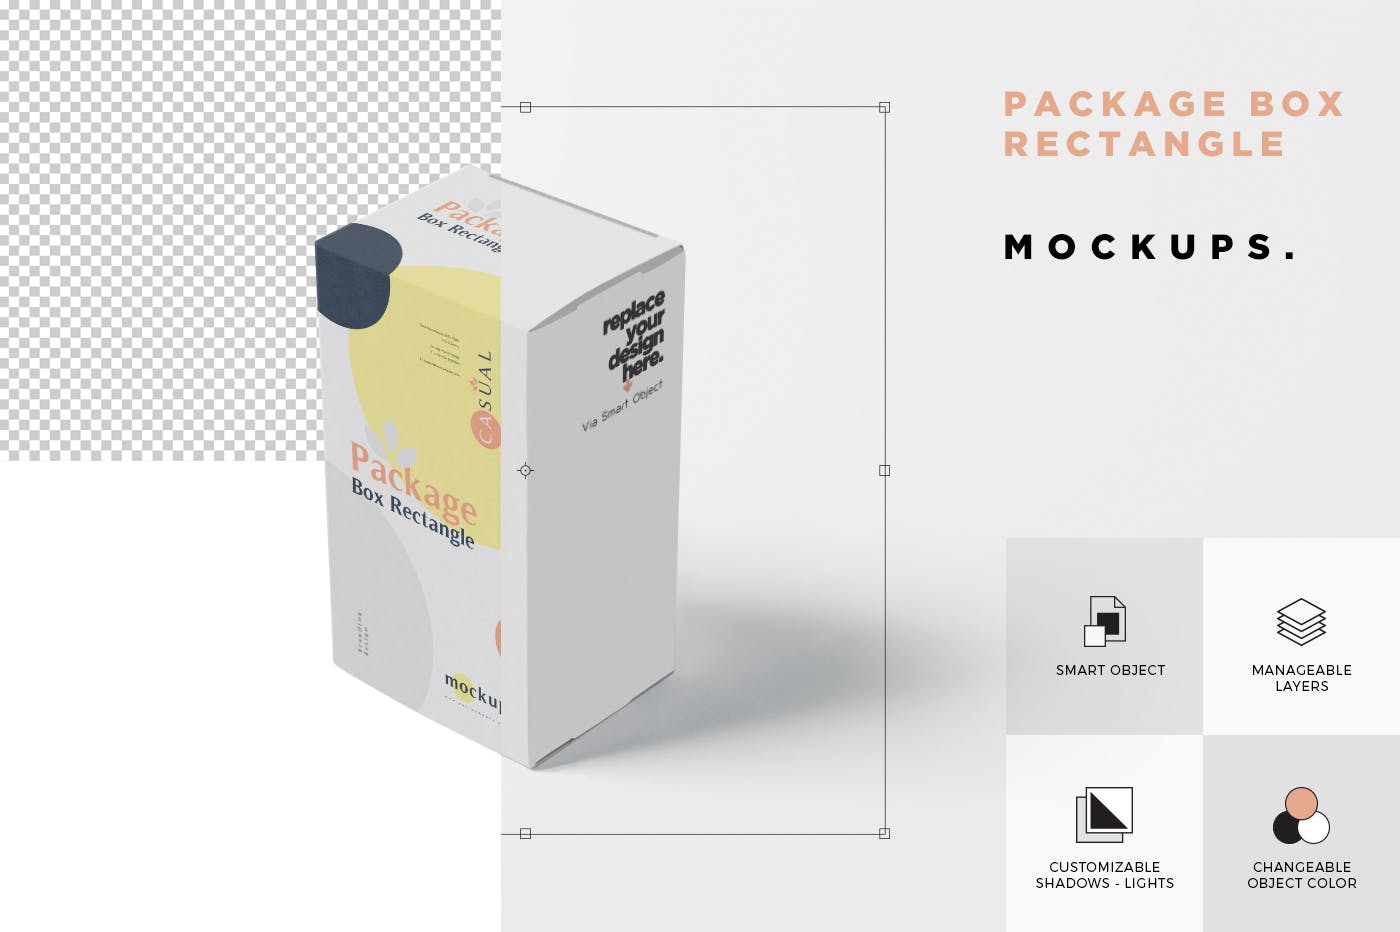 矩形产品包装盒外观设计效果图样机 Package Box Mock-Up – Rectangle插图(6)